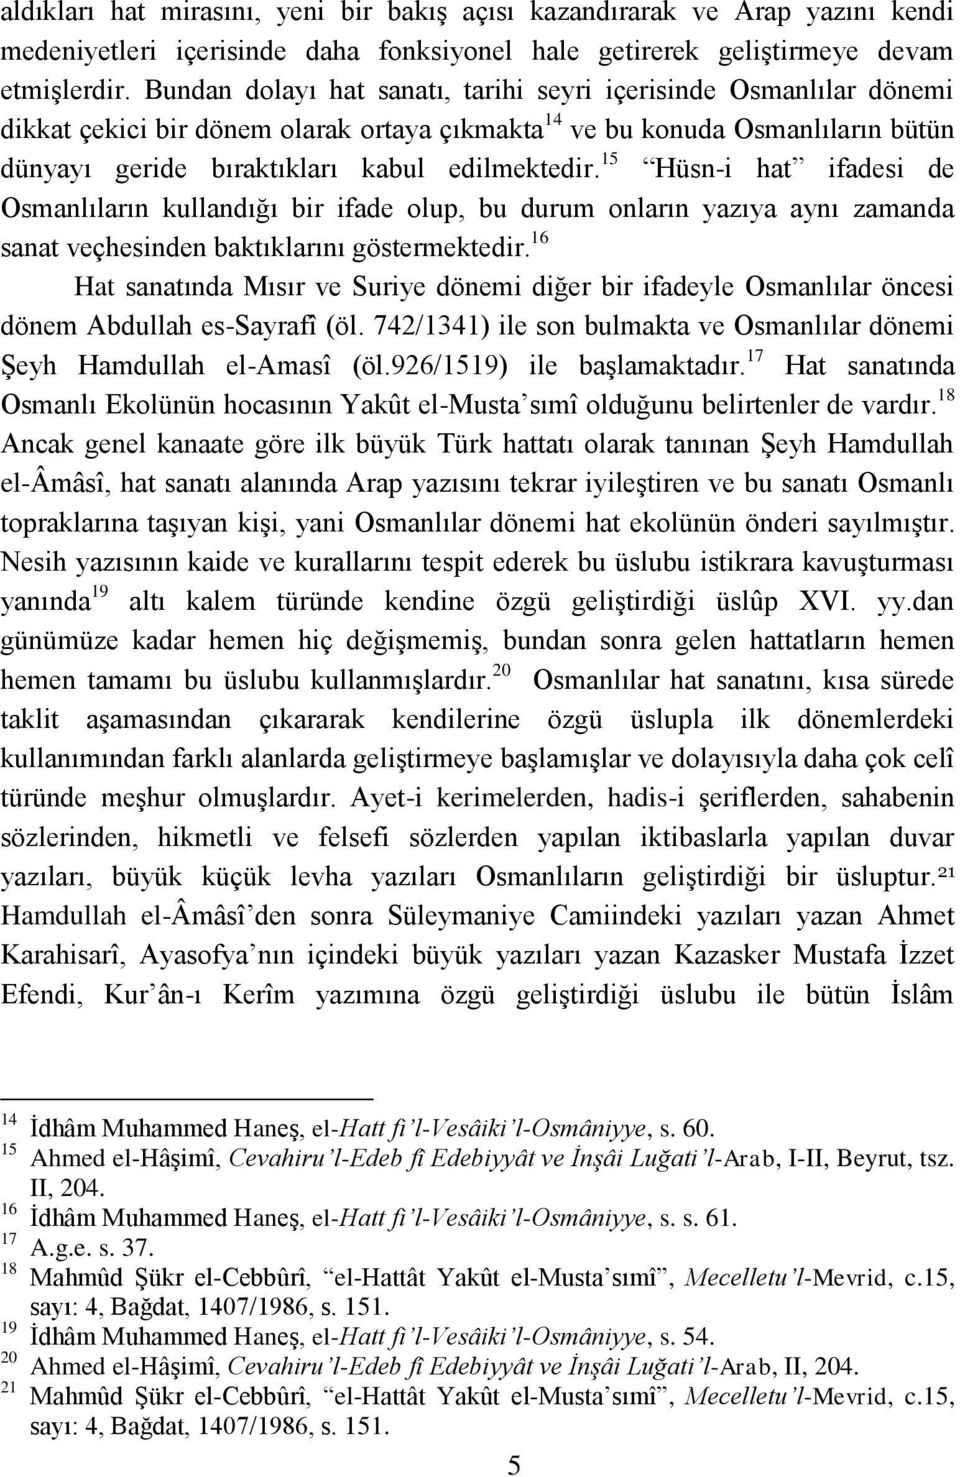 15 Hüsn-i hat ifadesi de Osmanlıların kullandığı bir ifade olup, bu durum onların yazıya aynı zamanda sanat veçhesinden baktıklarını göstermektedir.